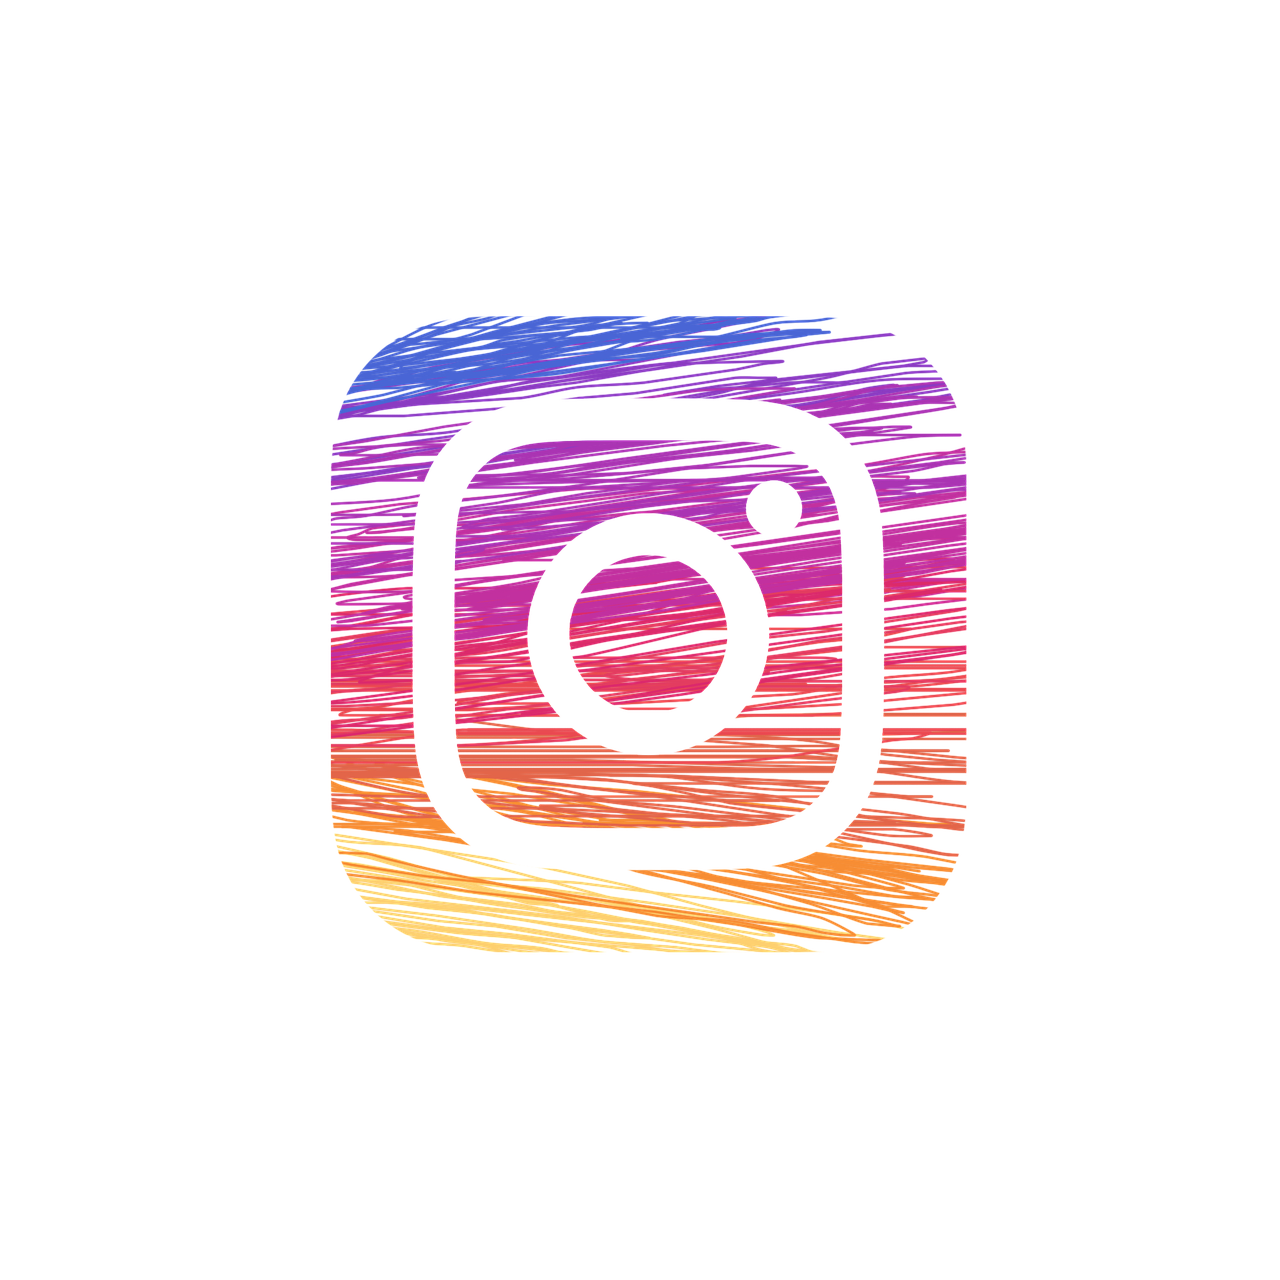 ¿Qué objetivos quieres conseguir con Instagram?